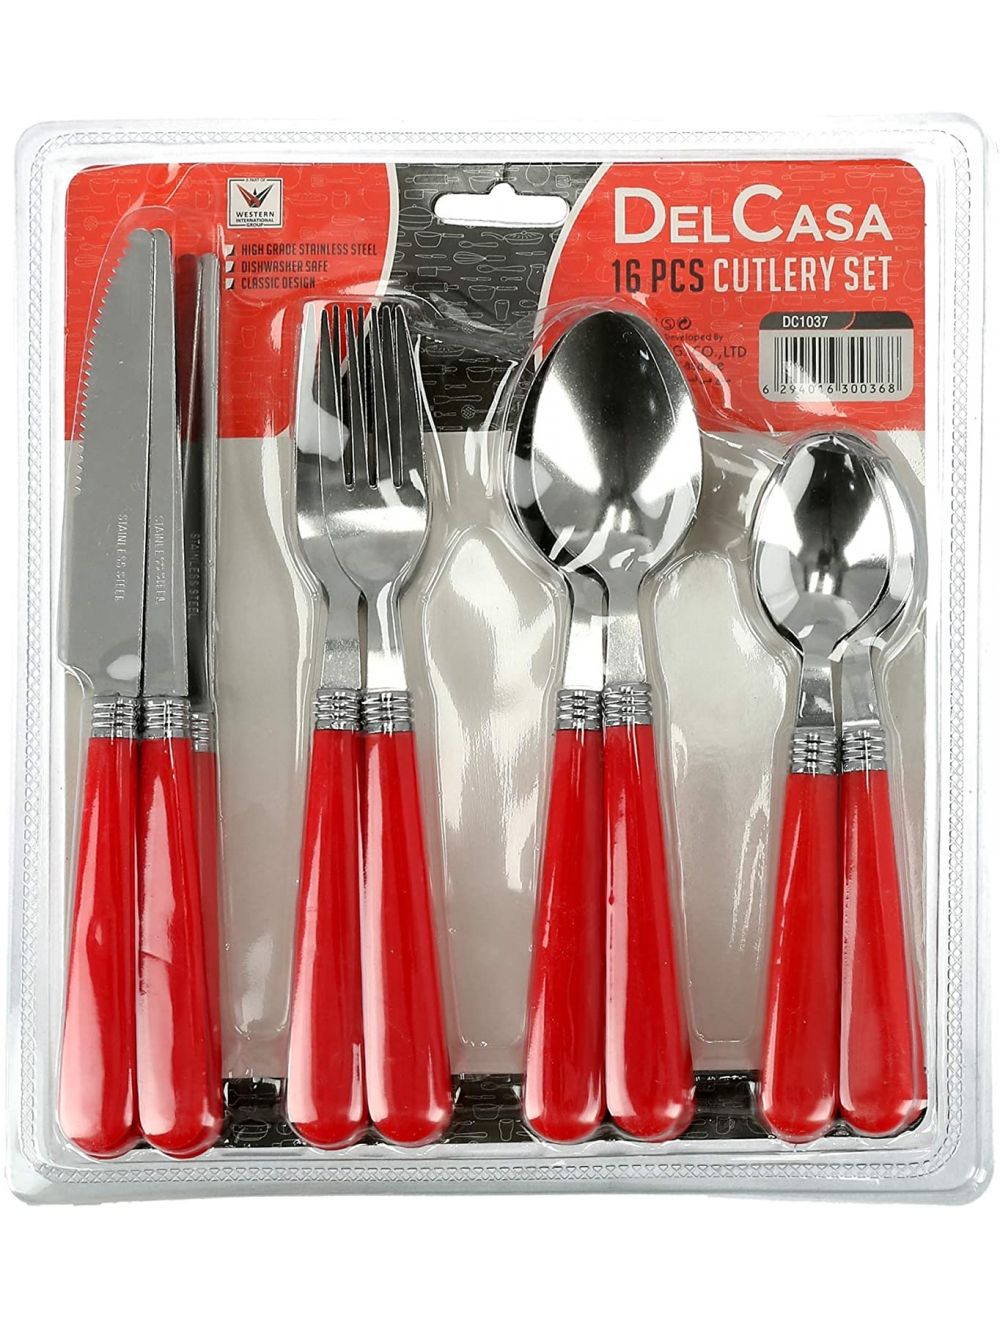 Delcasa 16 Pcs Cutlery Set | Best Kitchen Accessories in Bahrain | Halabh